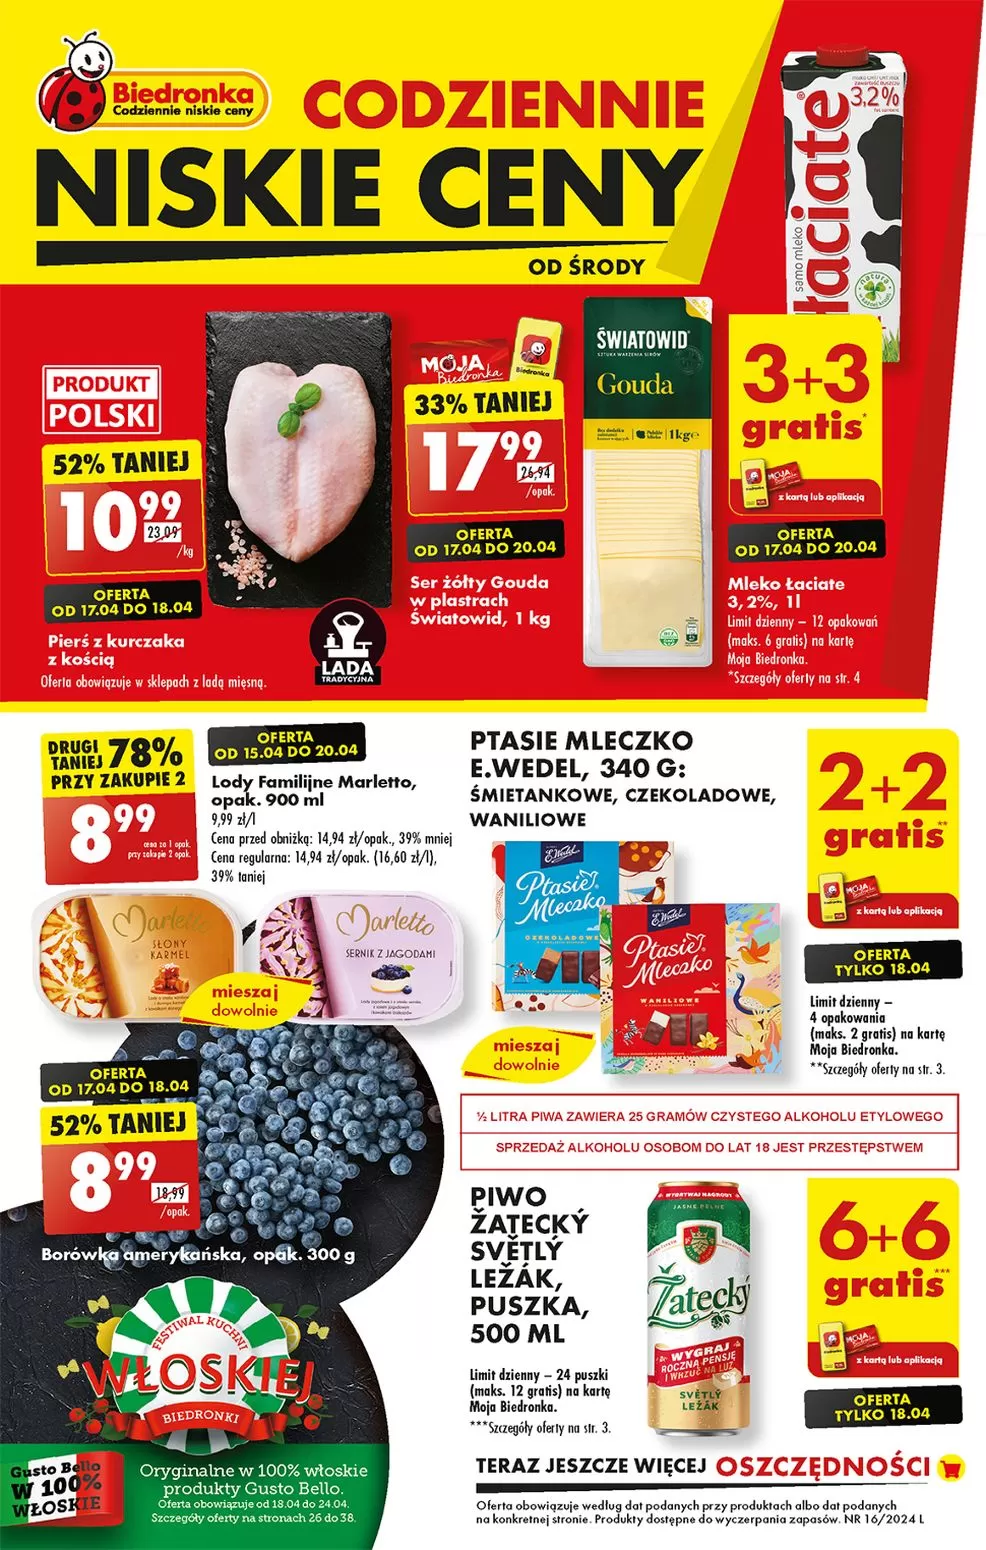 Ulotka gazetka promocyjna: Codziennie niskie ceny  ze sklepu Biedronka dostępna od 17.04 do 24.04